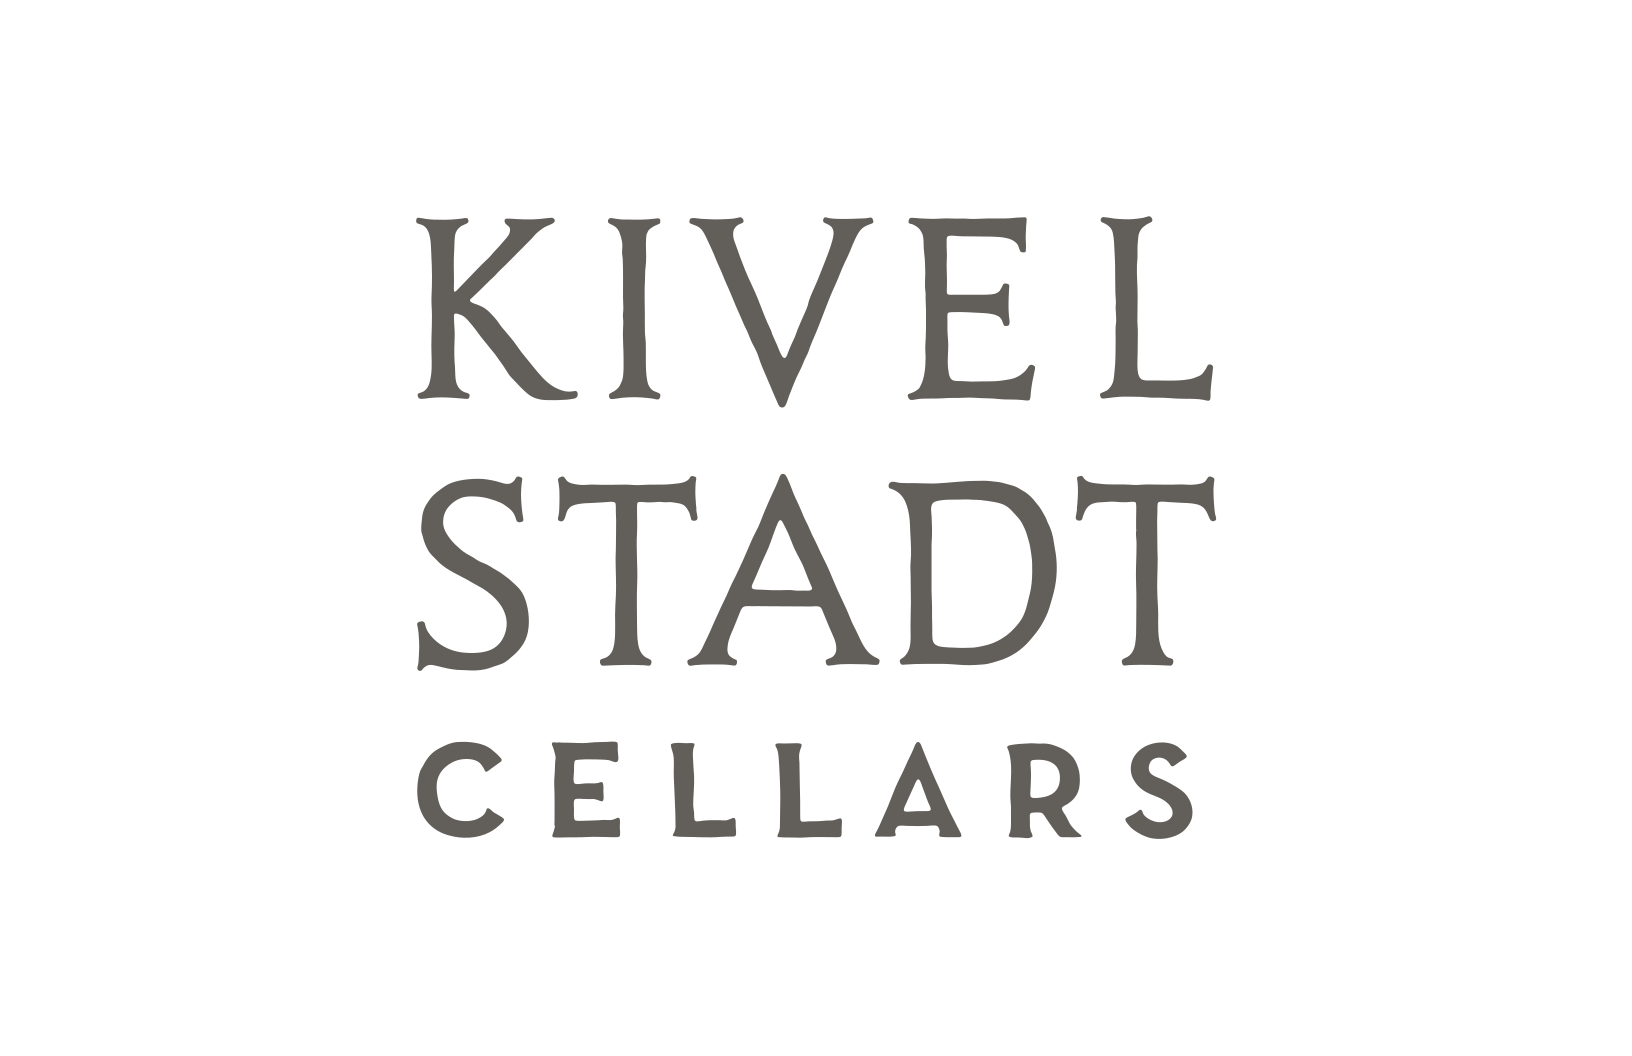 Kivelstadt Cellars